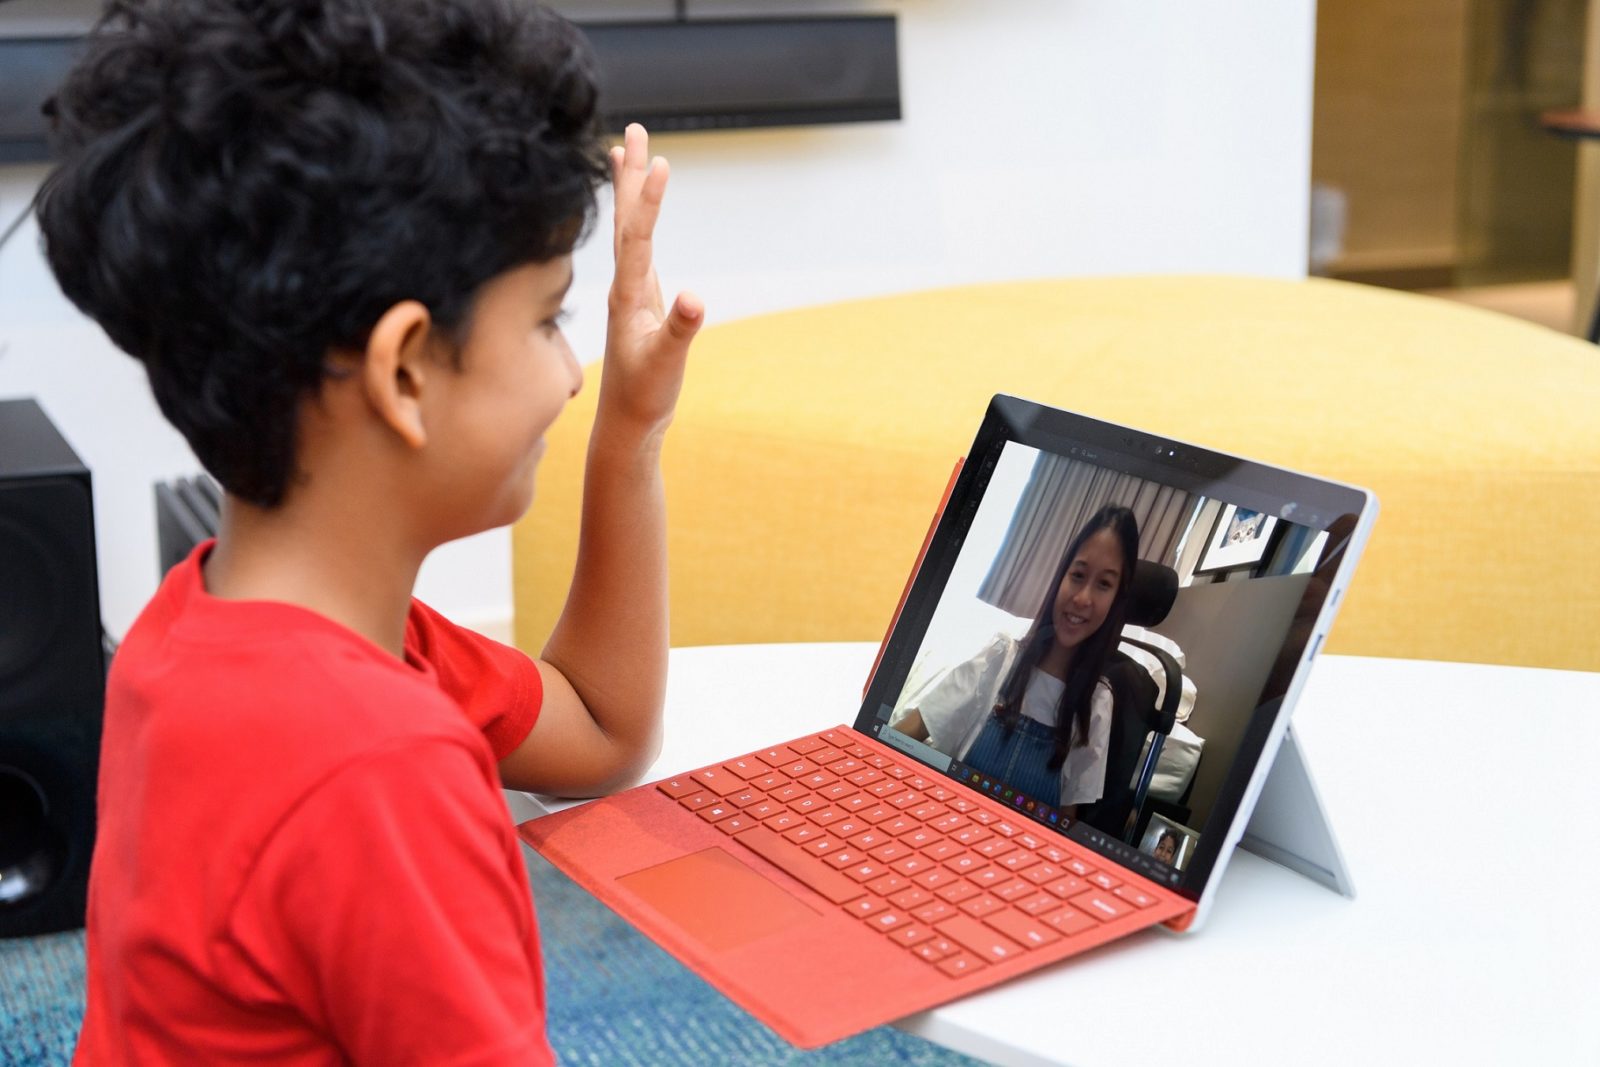 台灣微軟免費提供多元遠距學習解決方案，讓國小至大專院校師生使用 Microsoft Teams 進行遠距學習，並皆擁有完整資安防護。